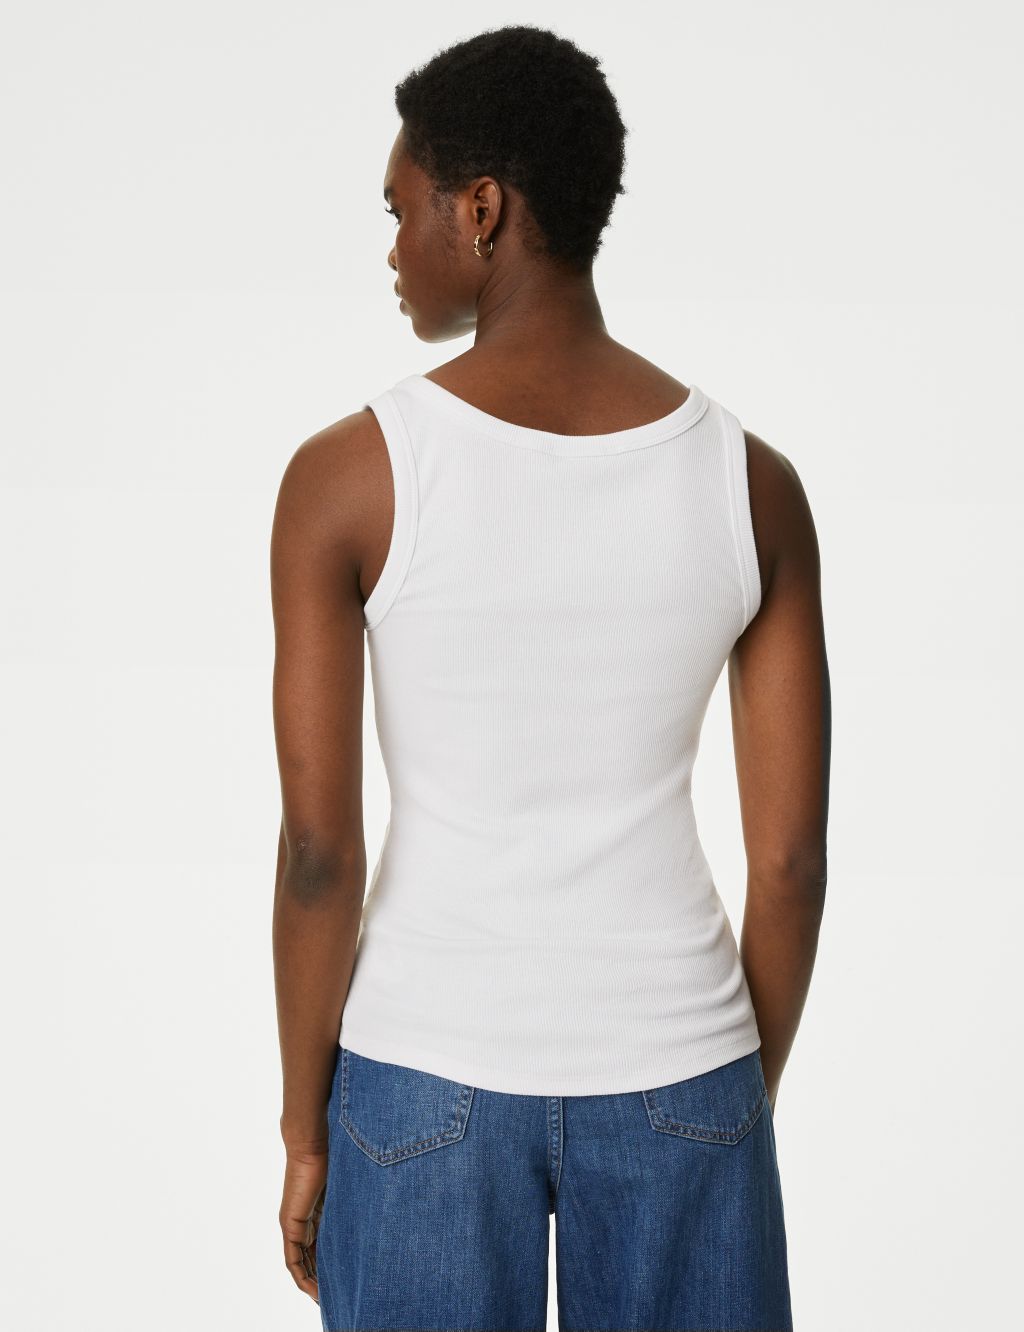 Cotton Rich Ribbed Slim Fit Vest Top image 4